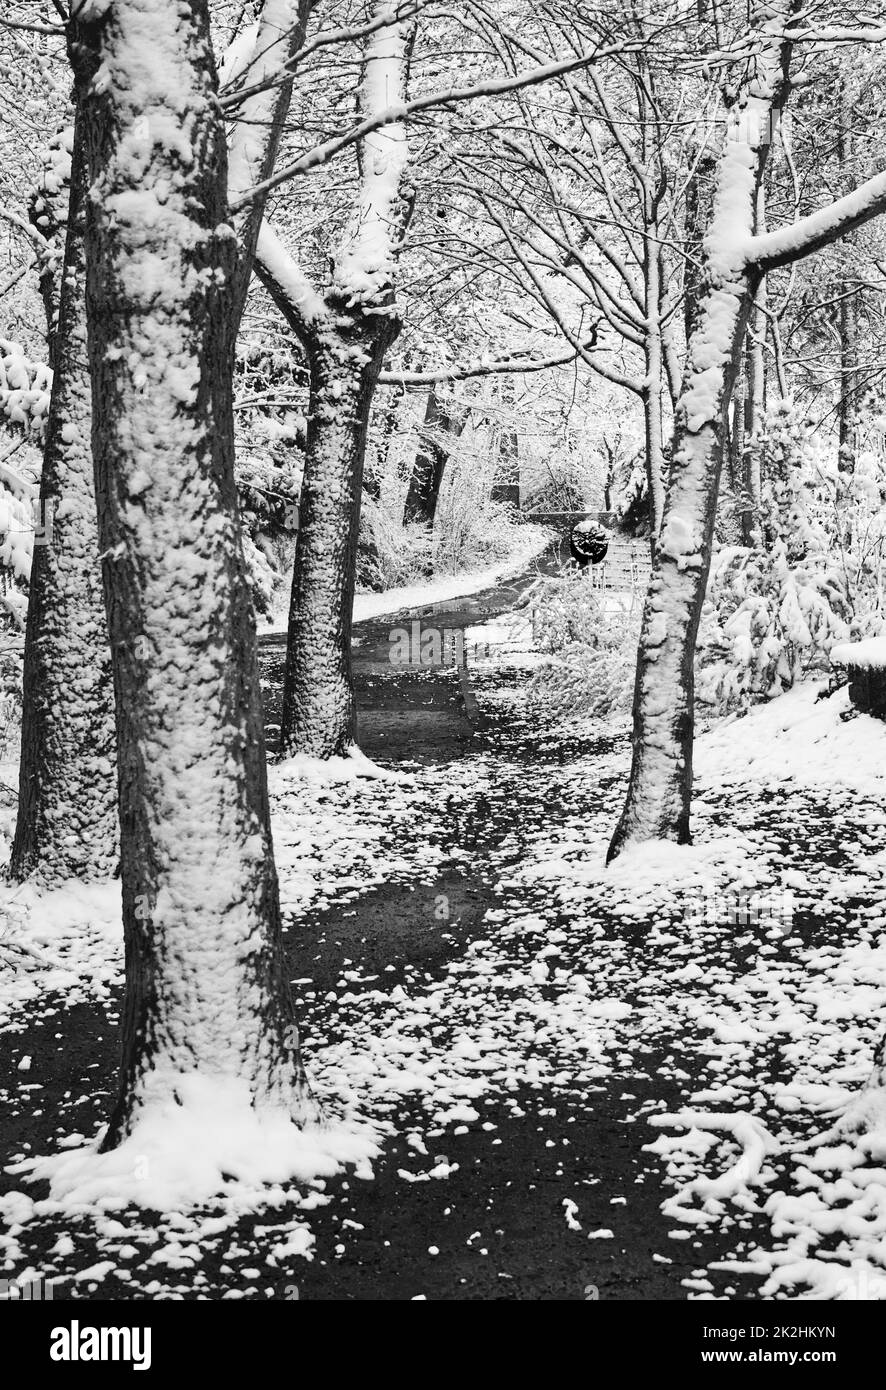 Schneelandschaft mit schneebedeckten Bäumen auf beiden Seiten des Weges, die den Weg zu einem runden Ort - Freizeitbereich markiert. Vergnügungsgebiet in einem Park, Schwarzweißfotografie Stockfoto